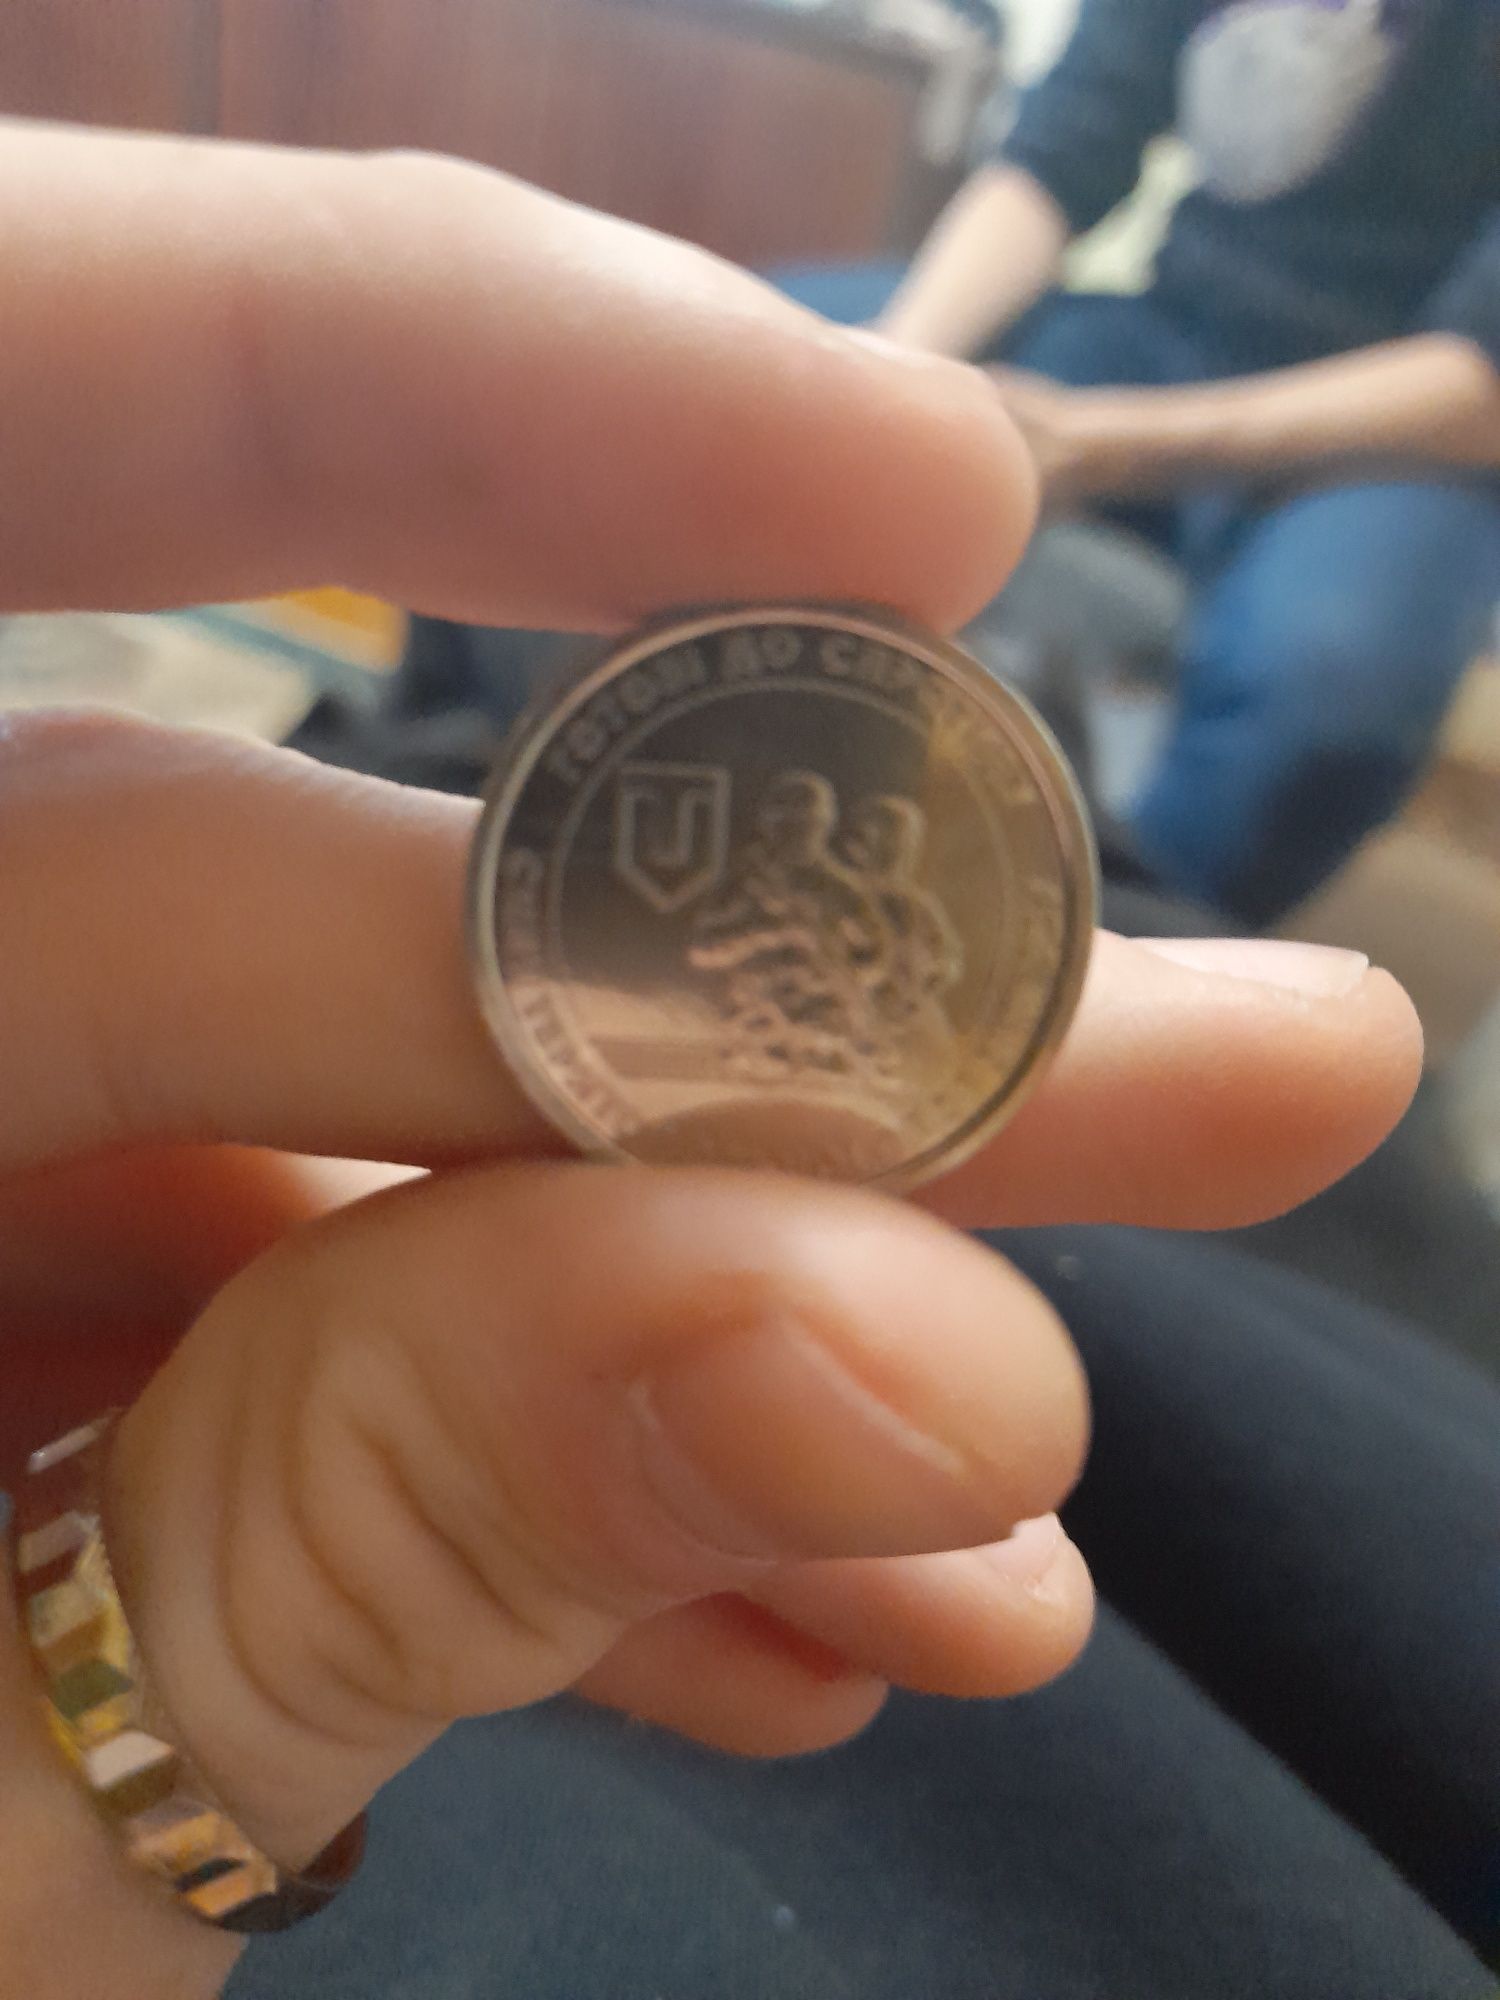 Монета 10 грн тро